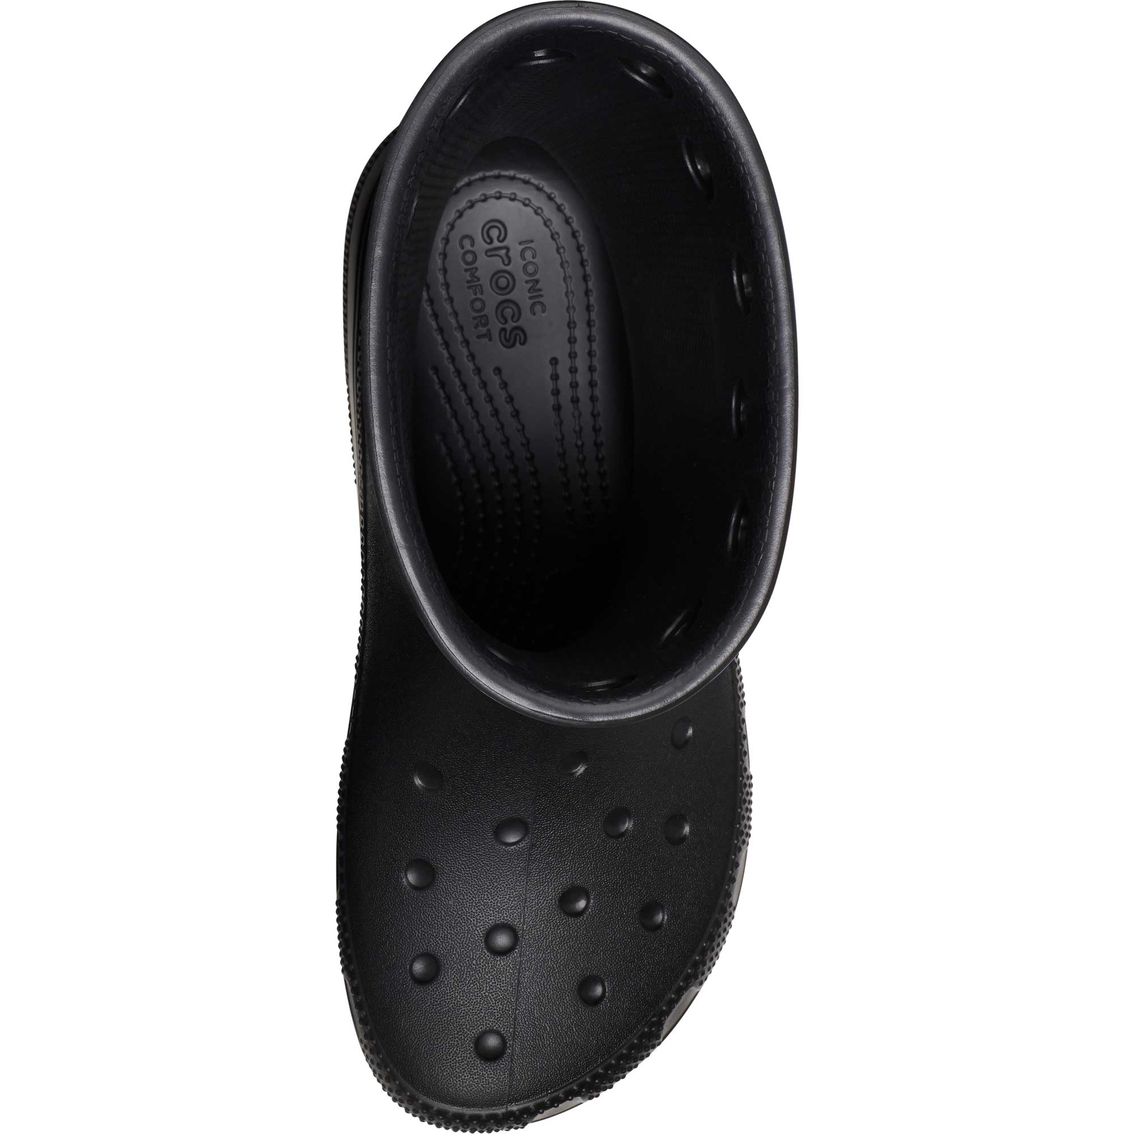 Crocs Women's Classic Rain Boots - Image 4 of 7